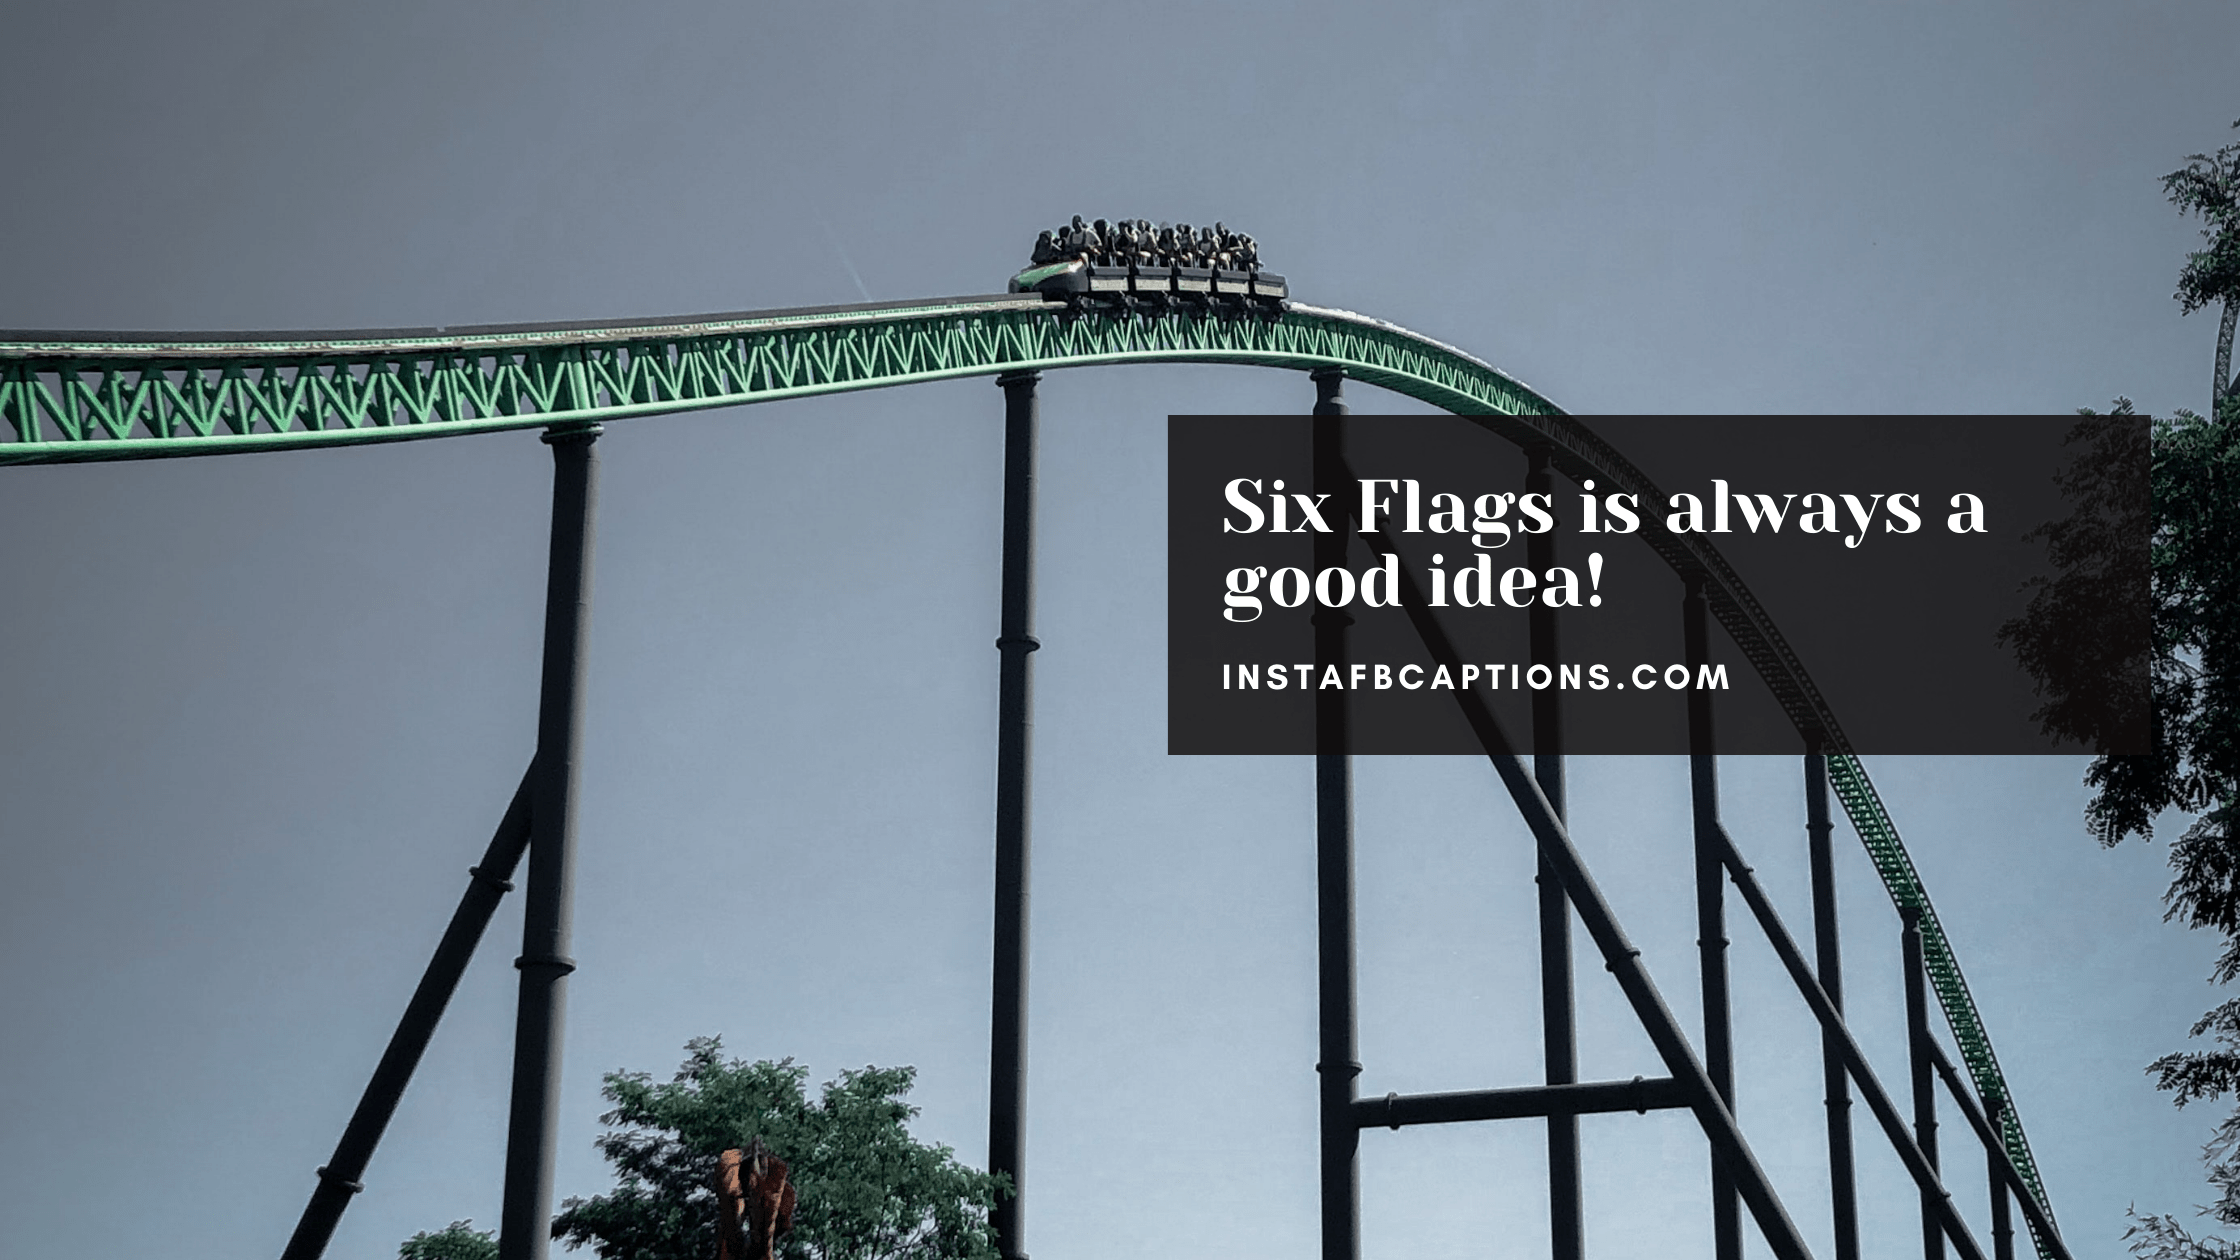 Amazing Six Flags Captions  - Amazing Six Flags Captions  - 96 Six Flags Instagram Captions in 2023